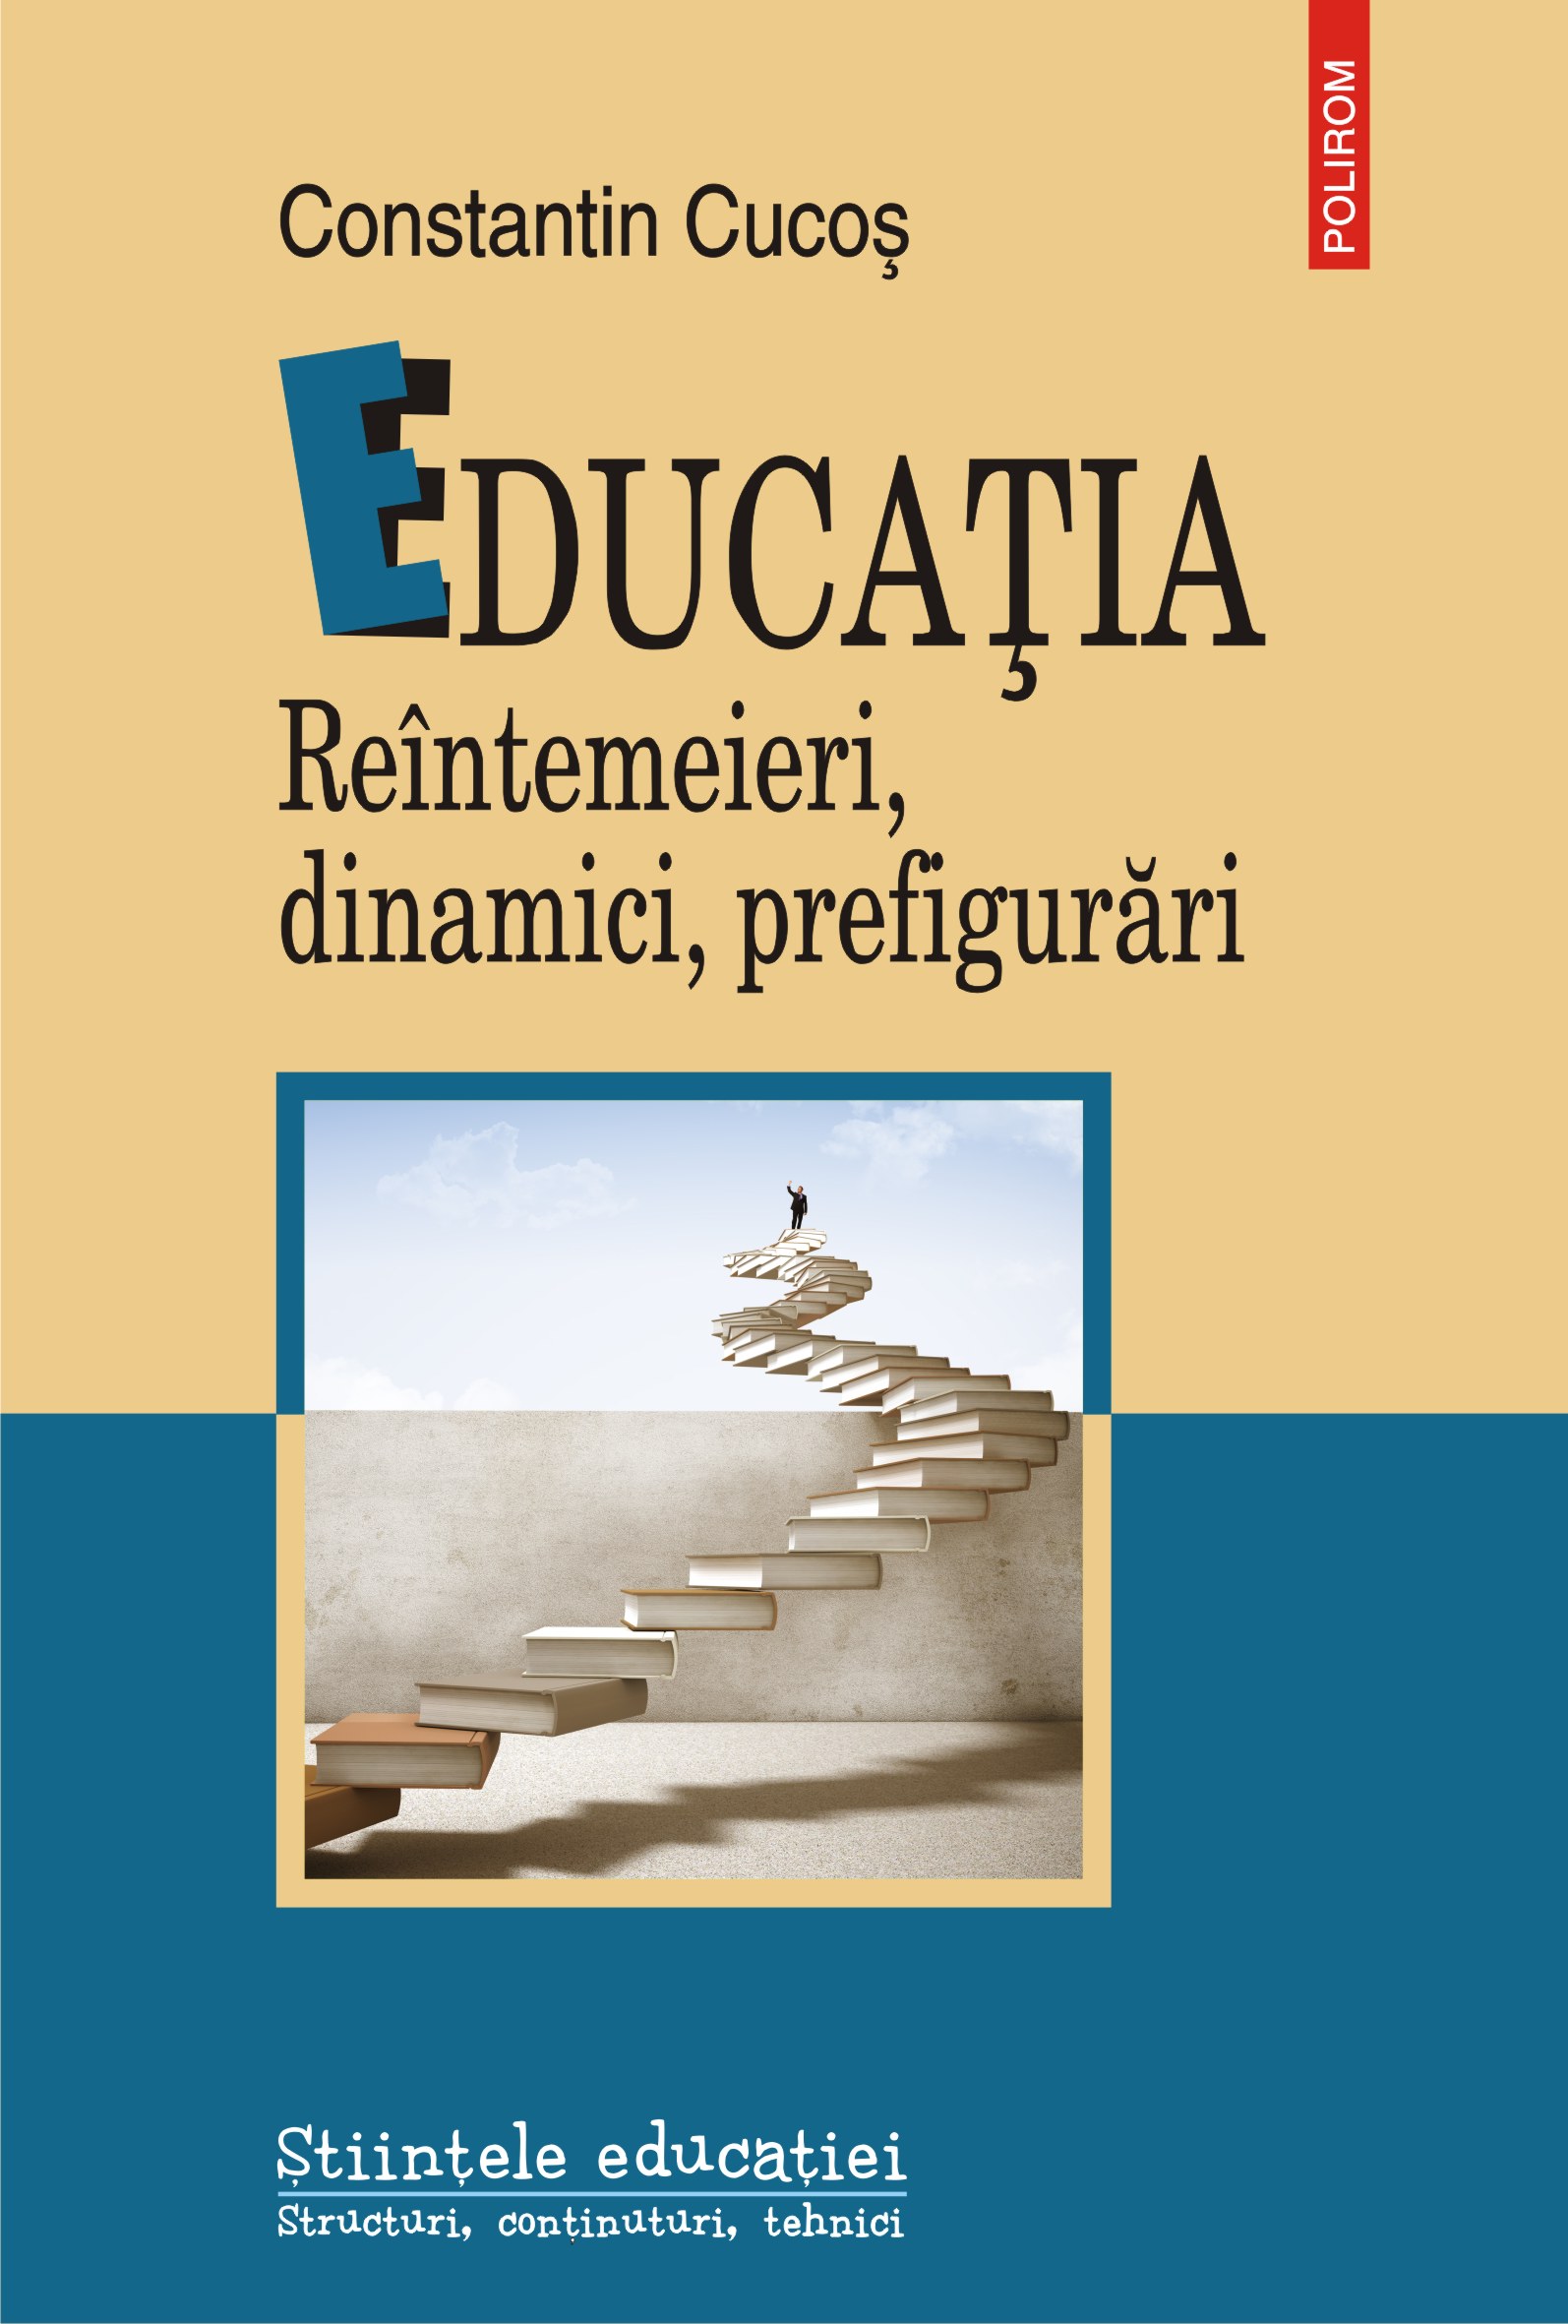 eBook Educatia reintemeieri, dinamici, prefigurari - Constantin Cucos